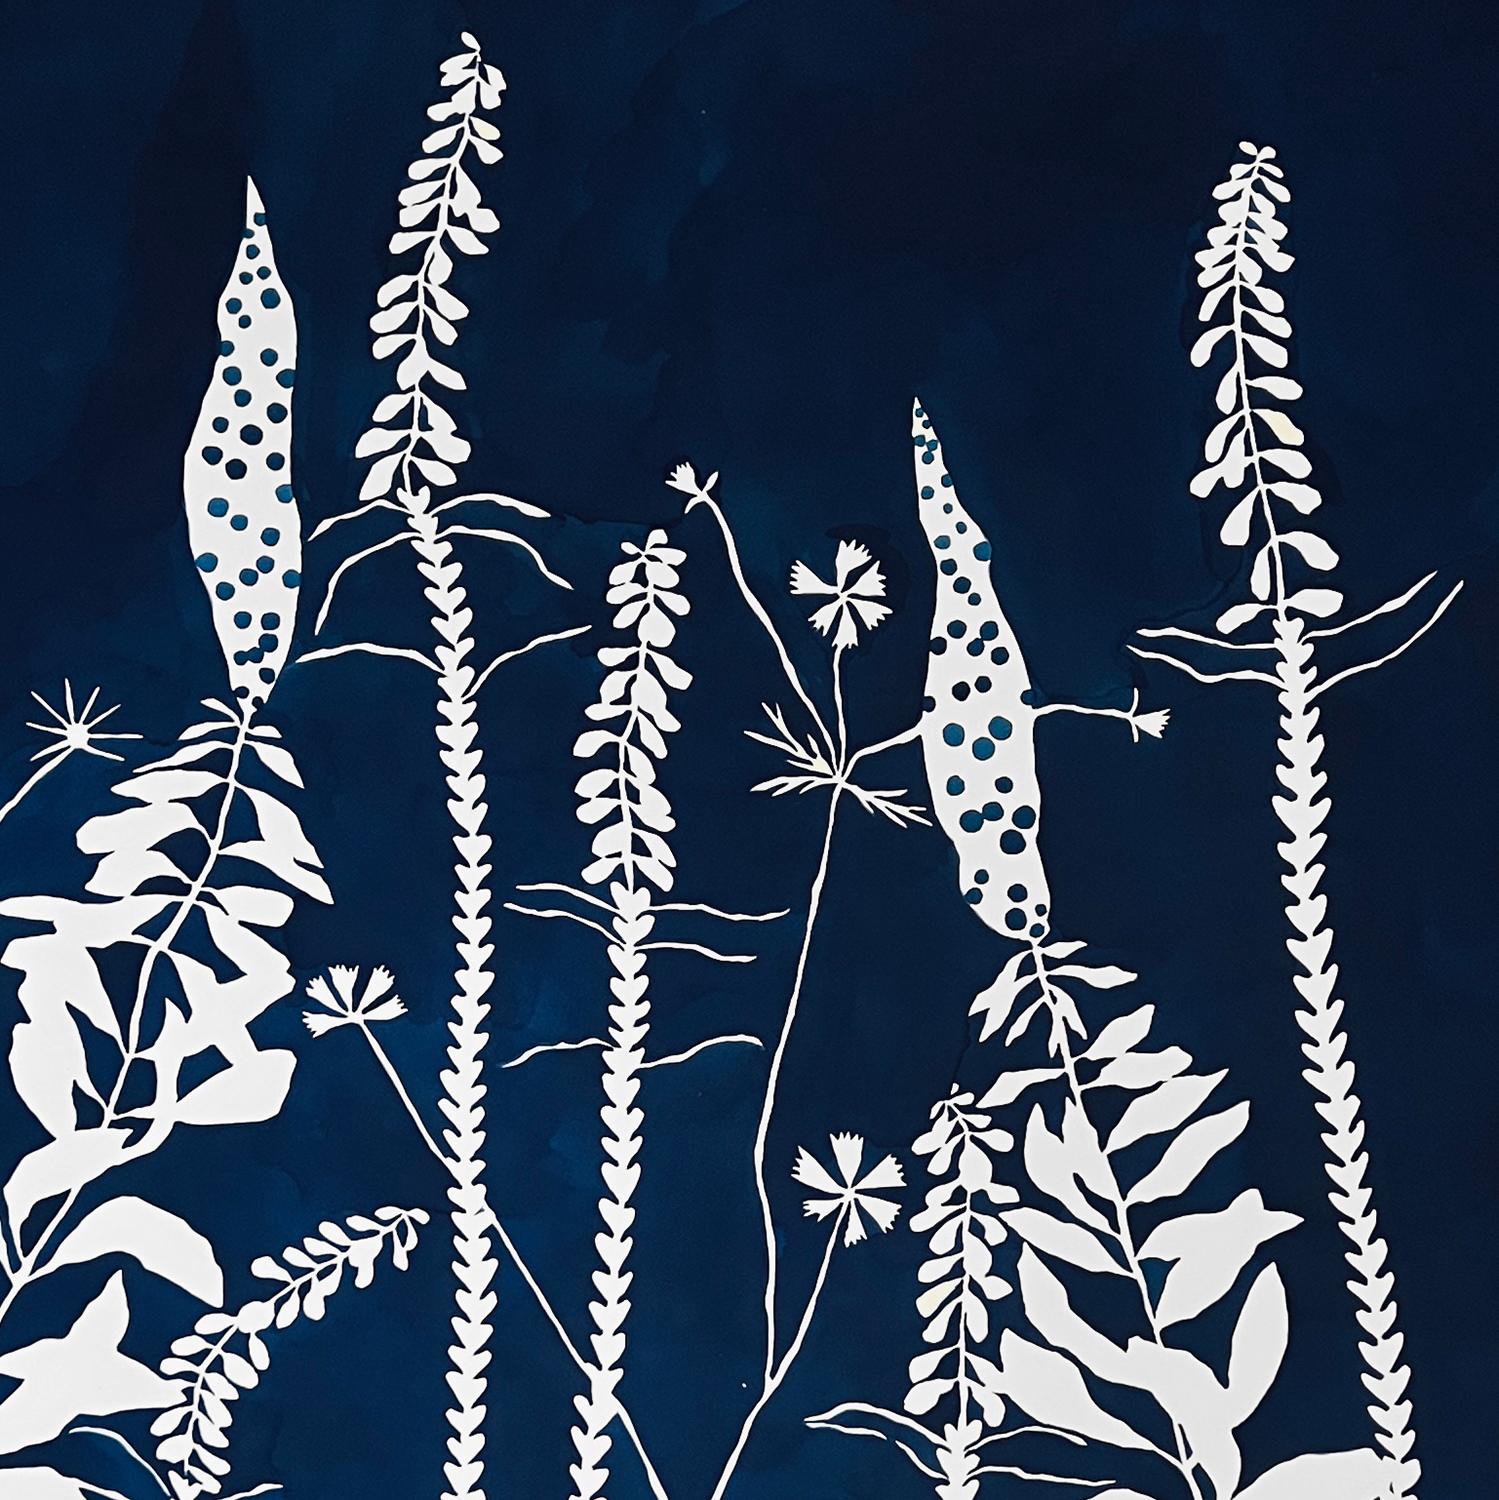 « Lapis Wildness », graphique, botanique, bicolore, bleu foncé, fleurs - Painting de Susan Hable